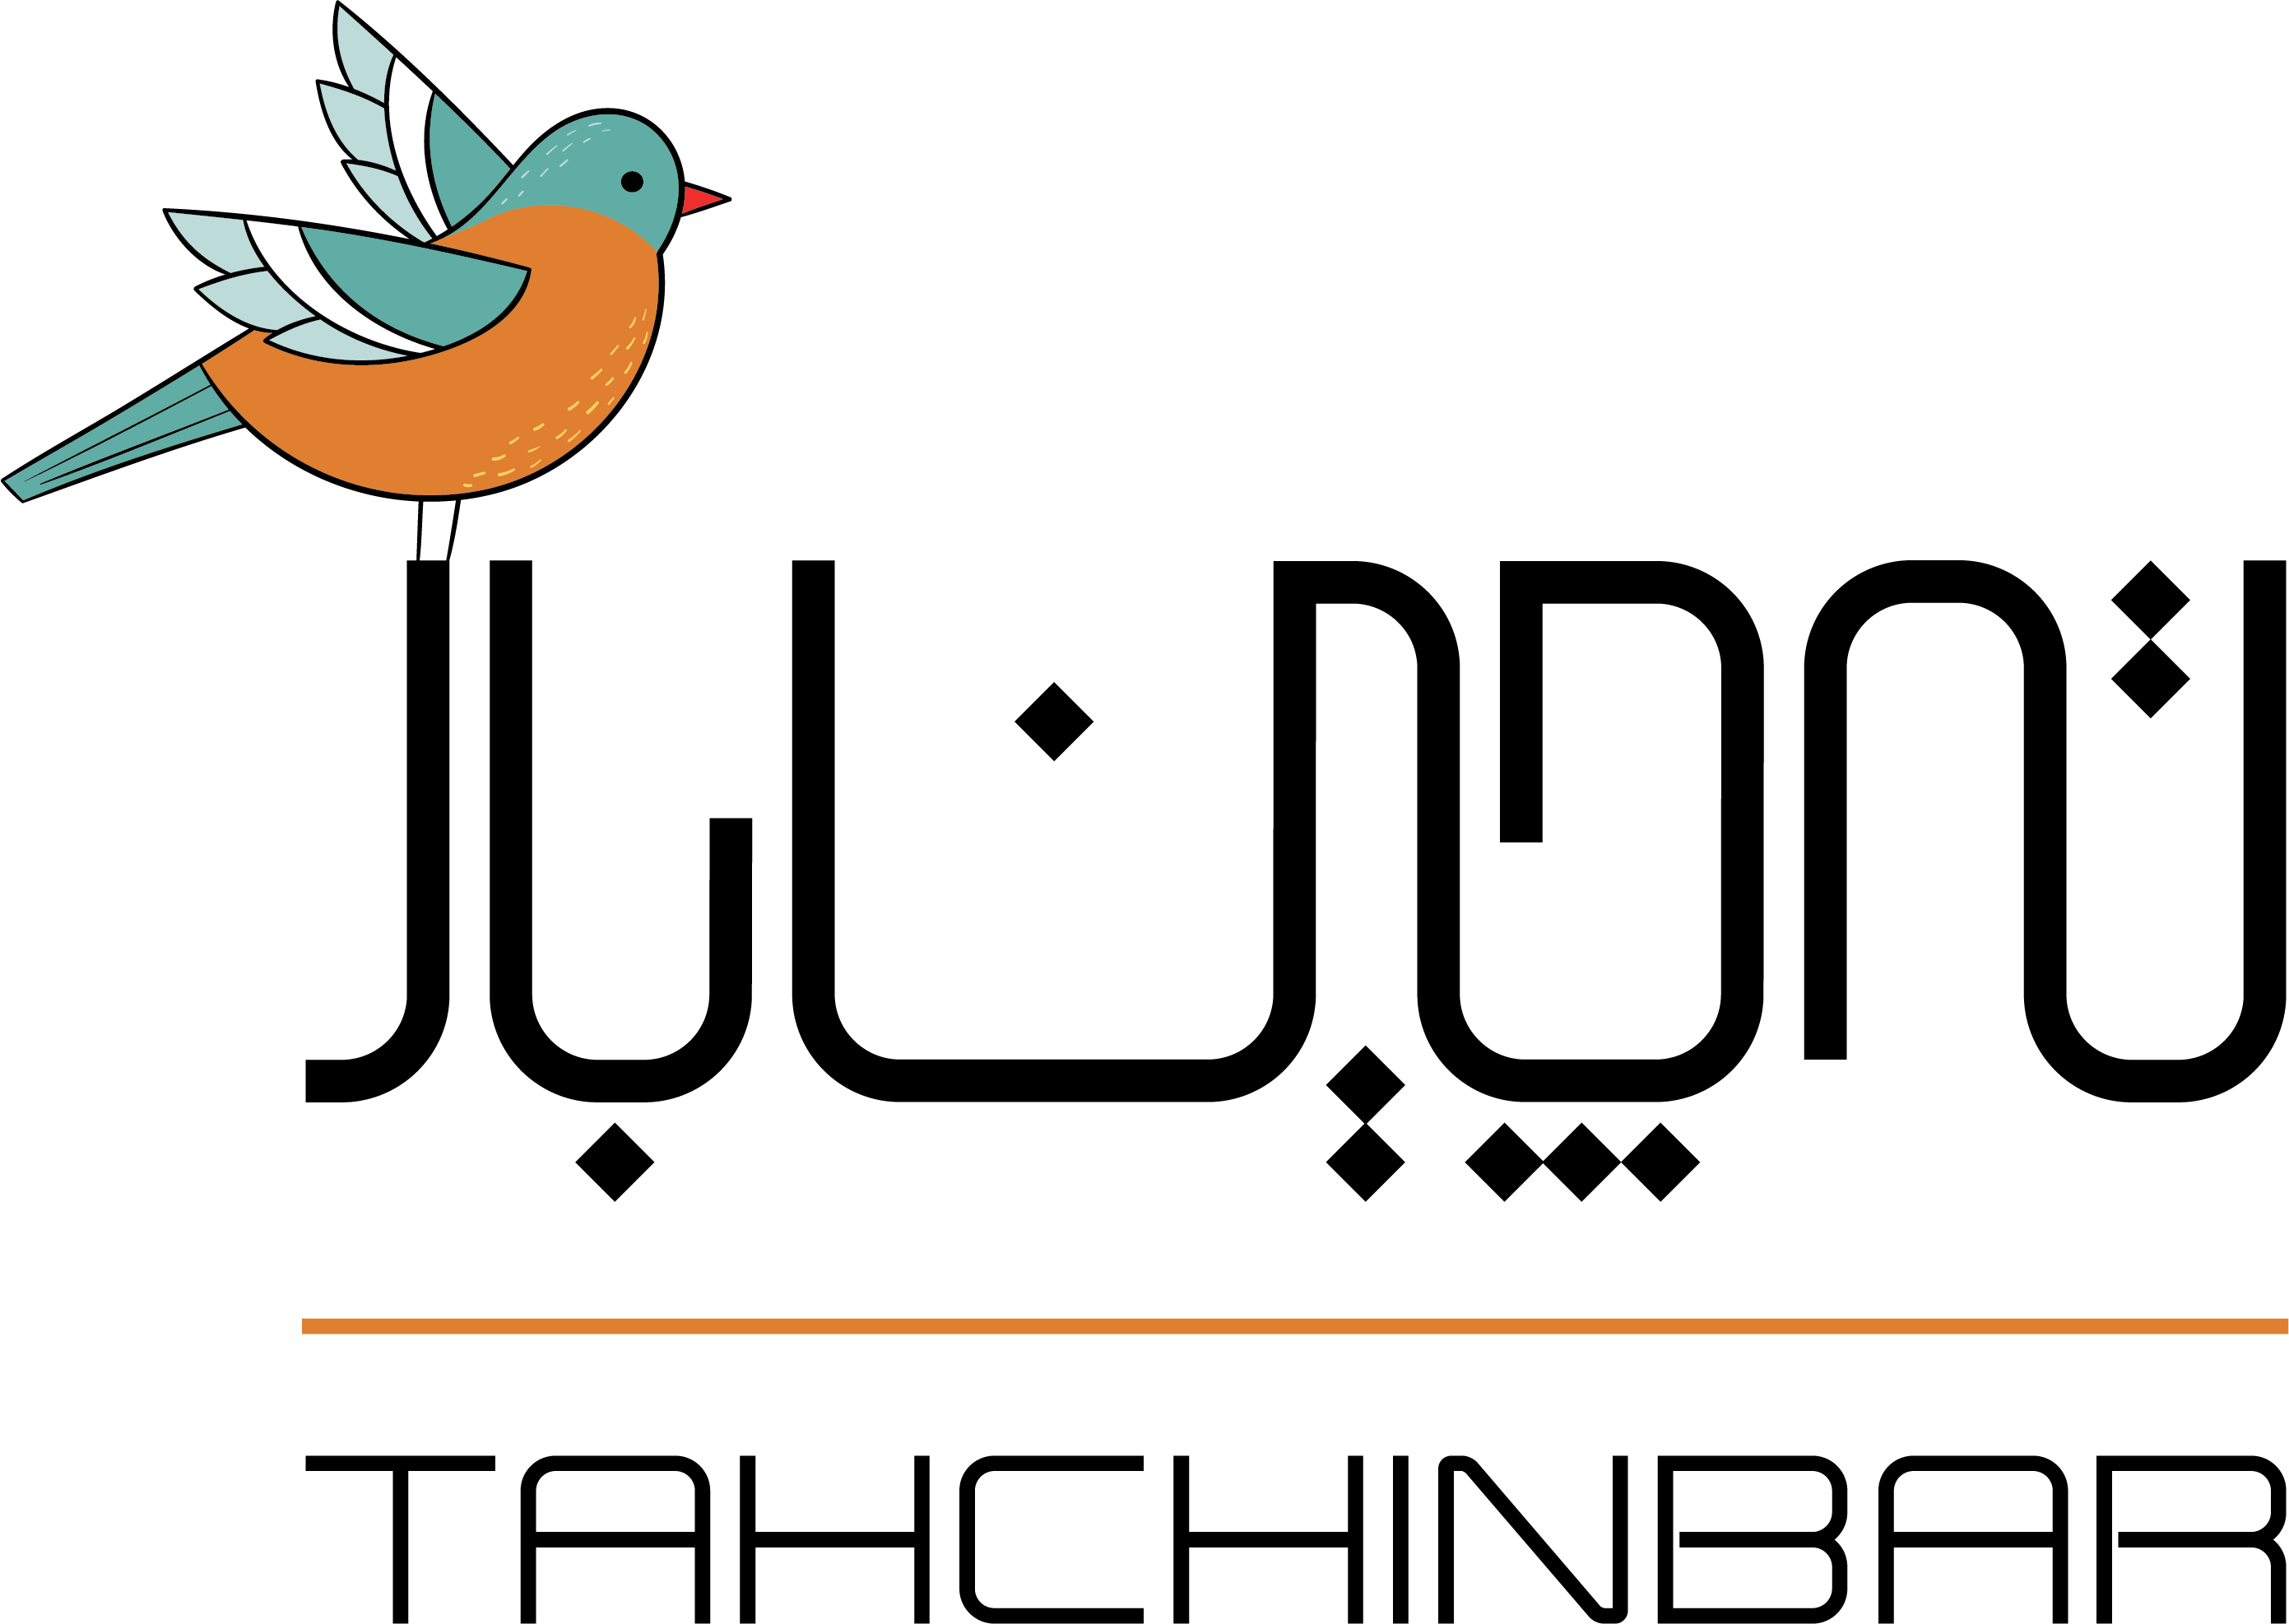 tahchin bar logo with bird finalllllllllll